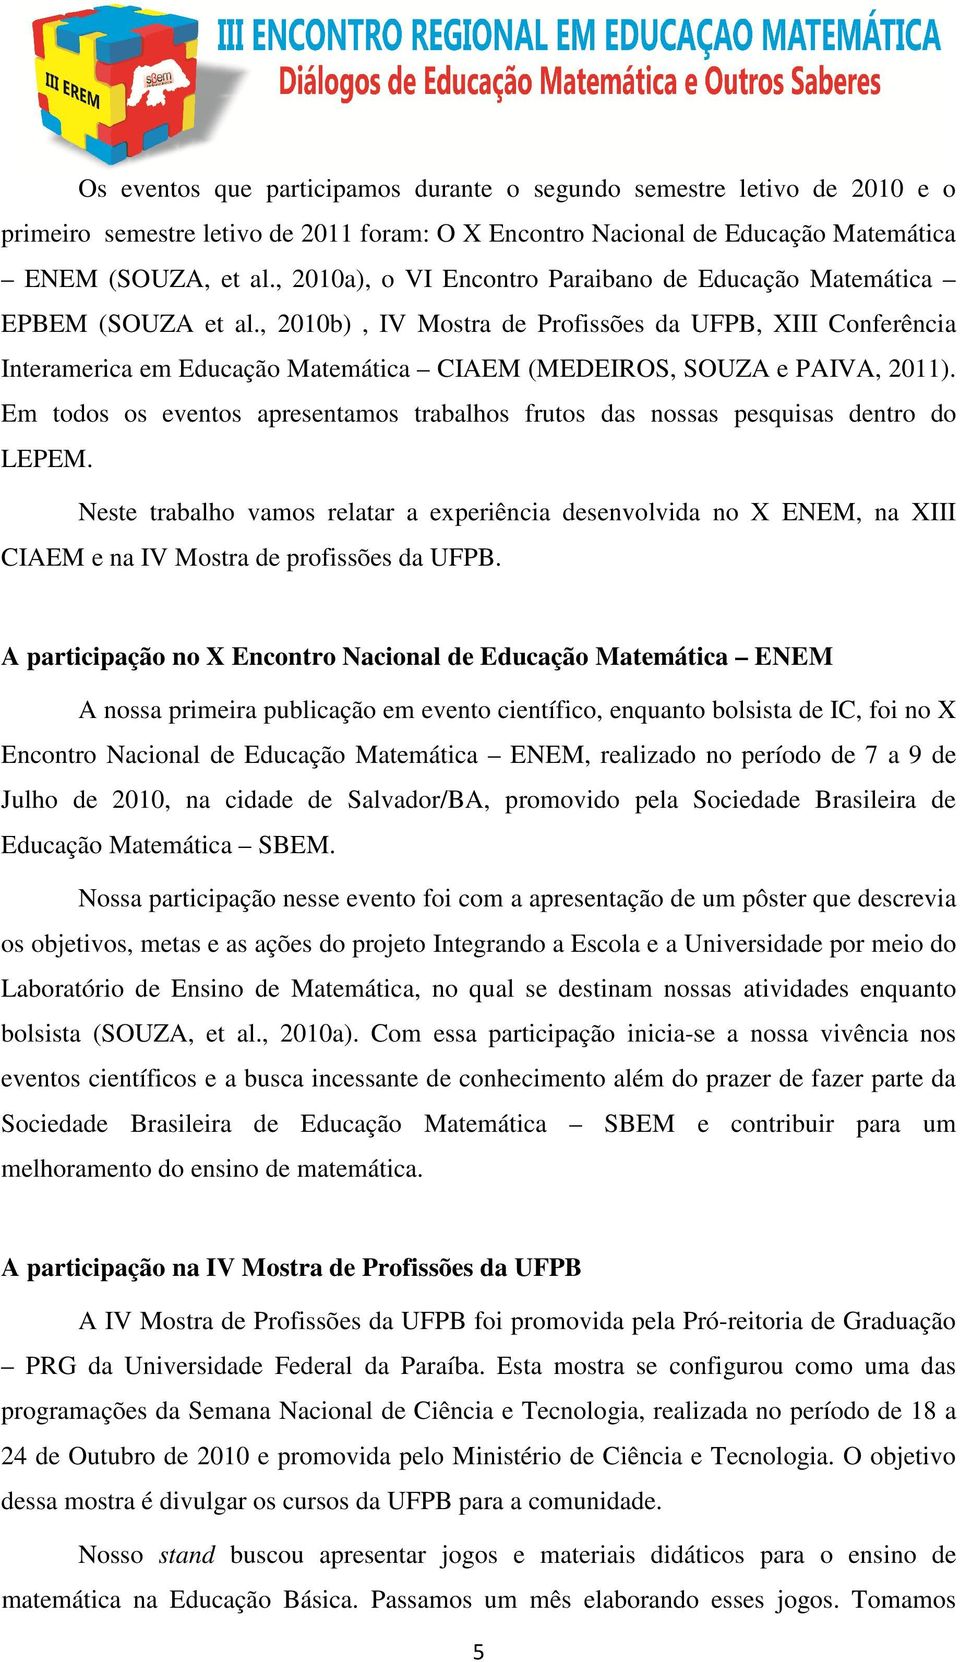 , 2010b), IV Mostra de Profissões da UFPB, XIII Conferência Interamerica em Educação Matemática CIAEM (MEDEIROS, SOUZA e PAIVA, 2011).